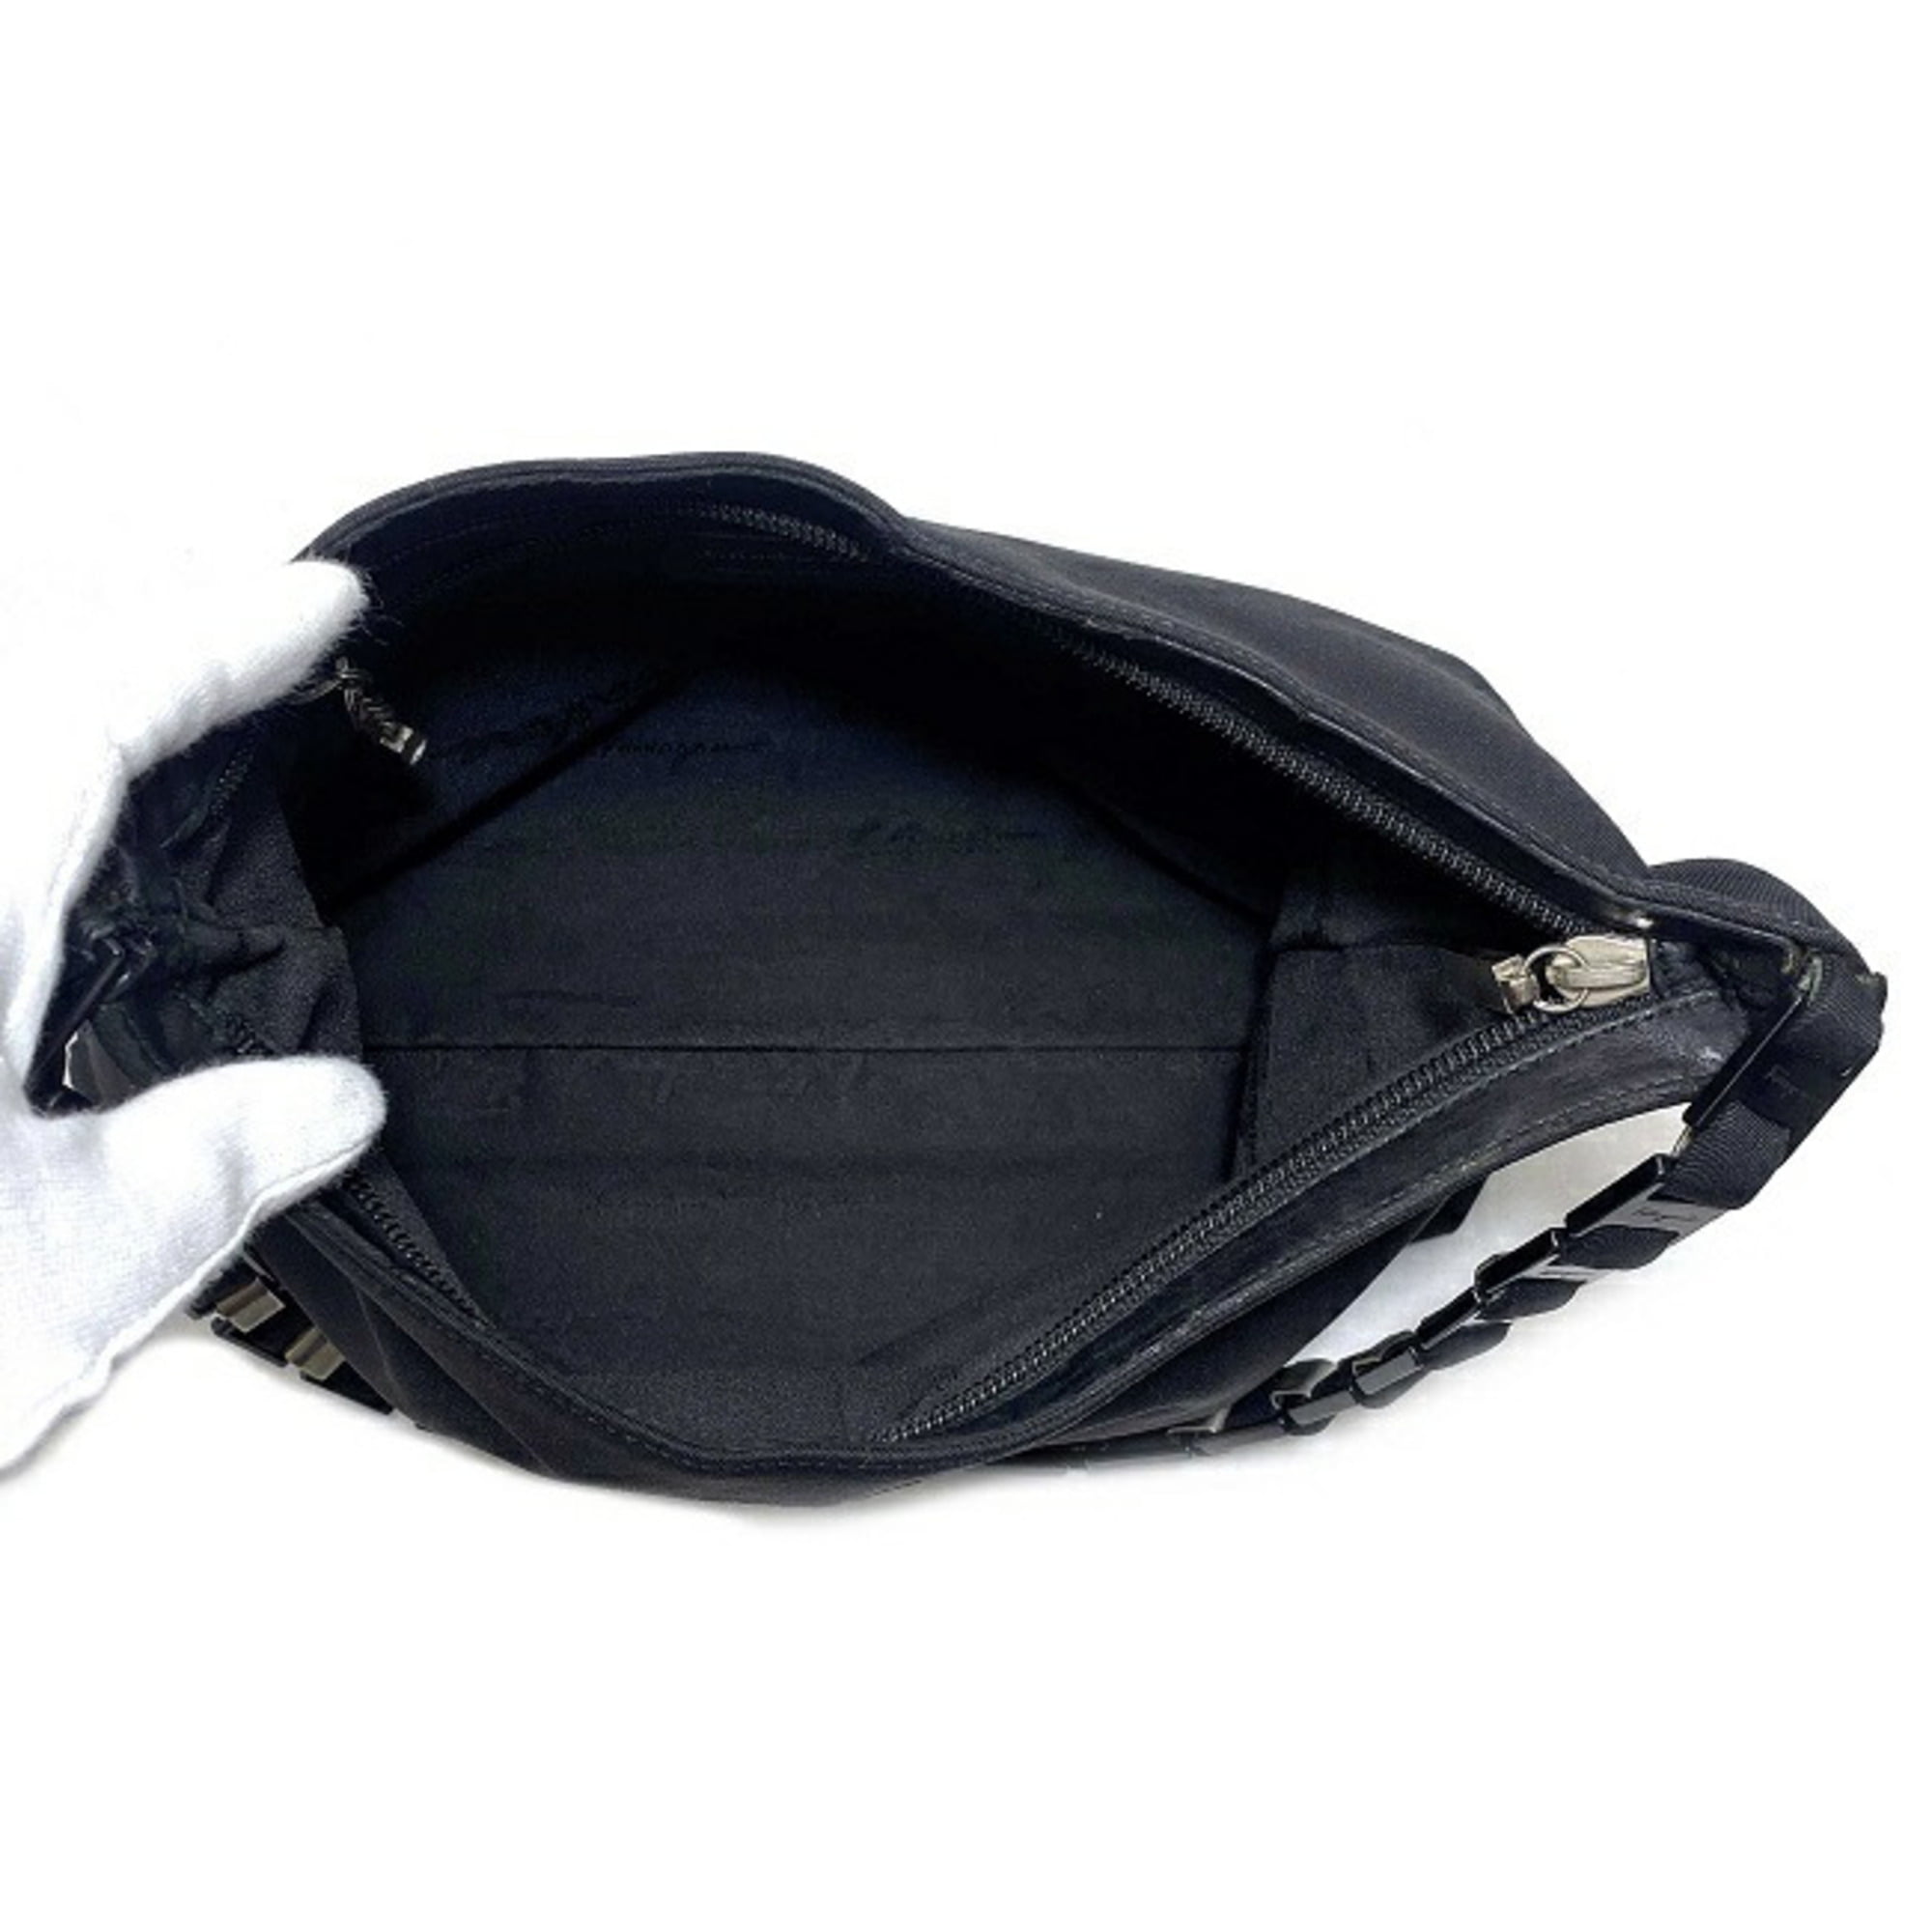 Authenticated Used Salvatore Ferragamo Shoulder Bag Black AQ